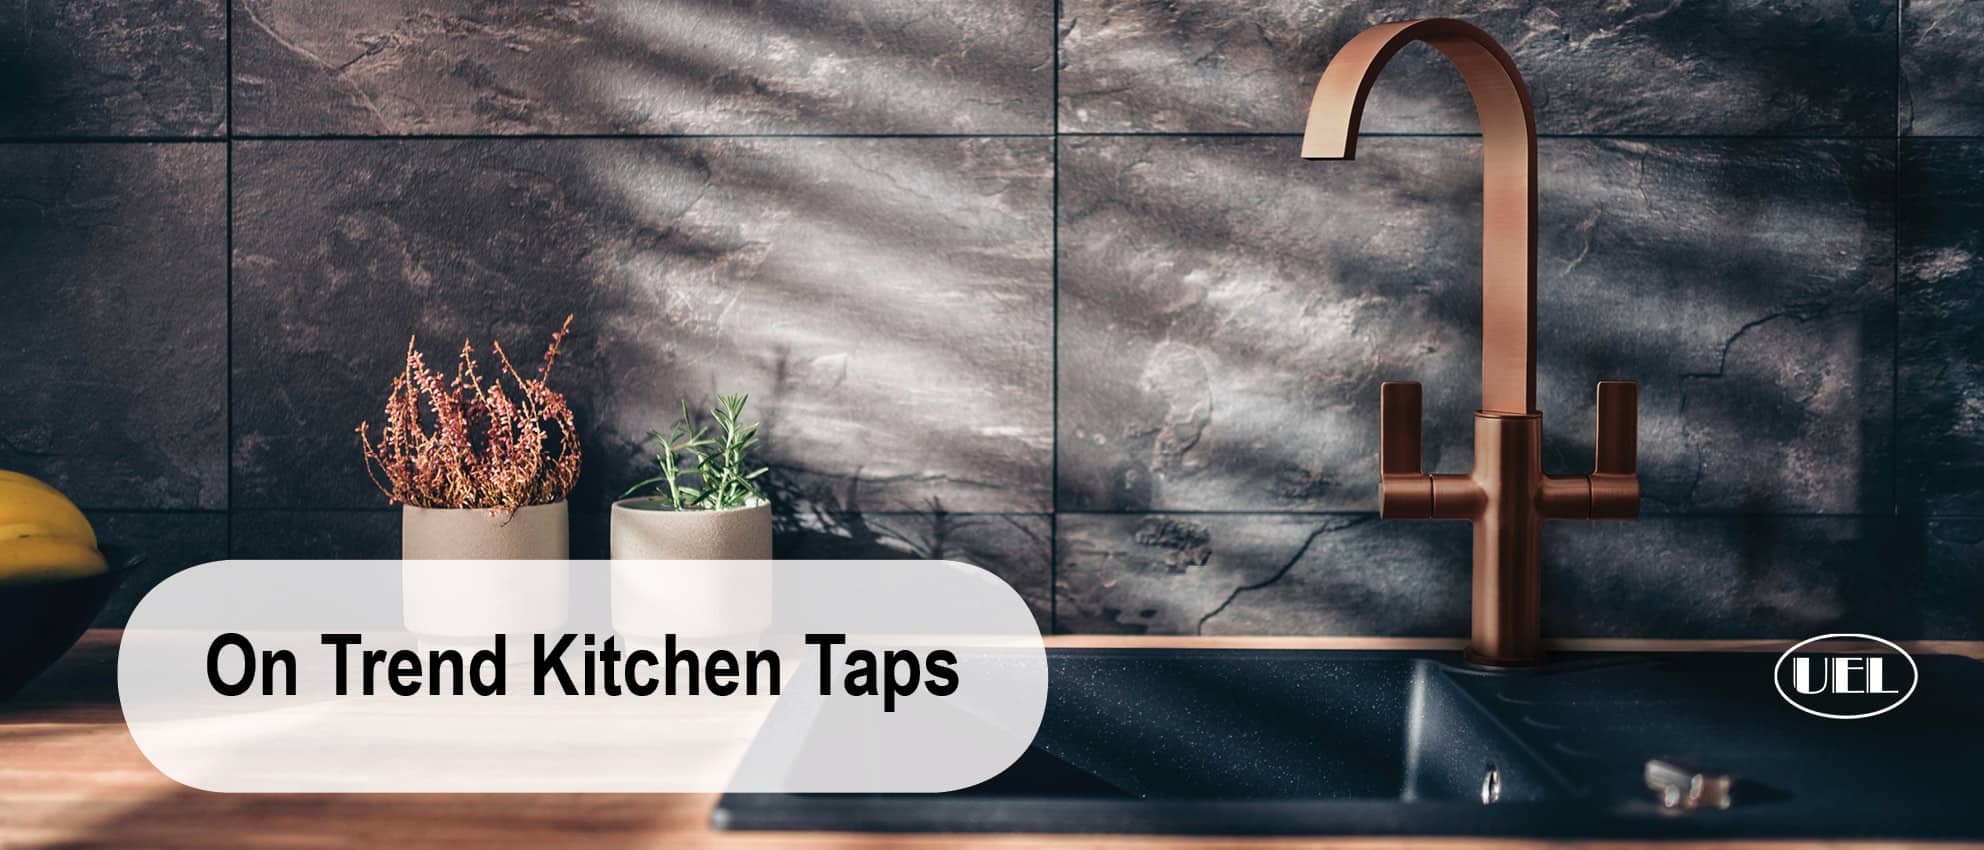 On trend kitchen taps